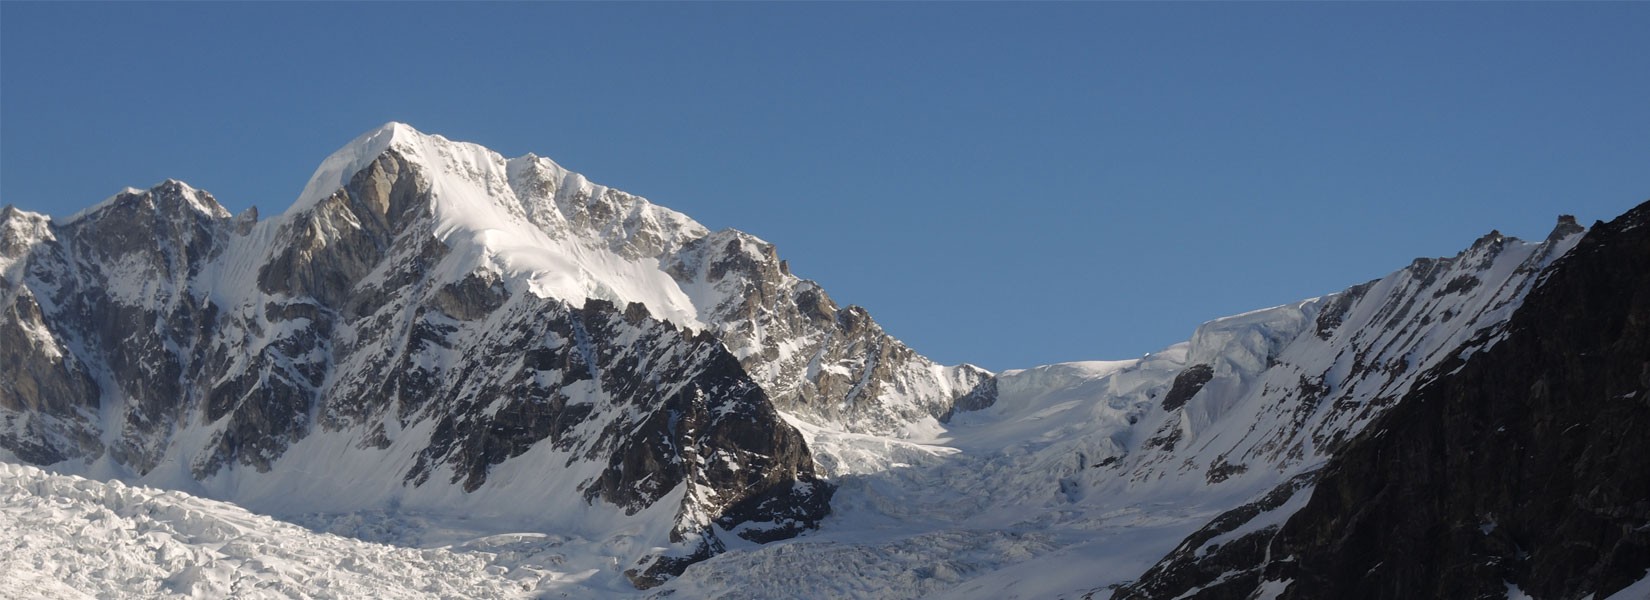 Gyalsten peak